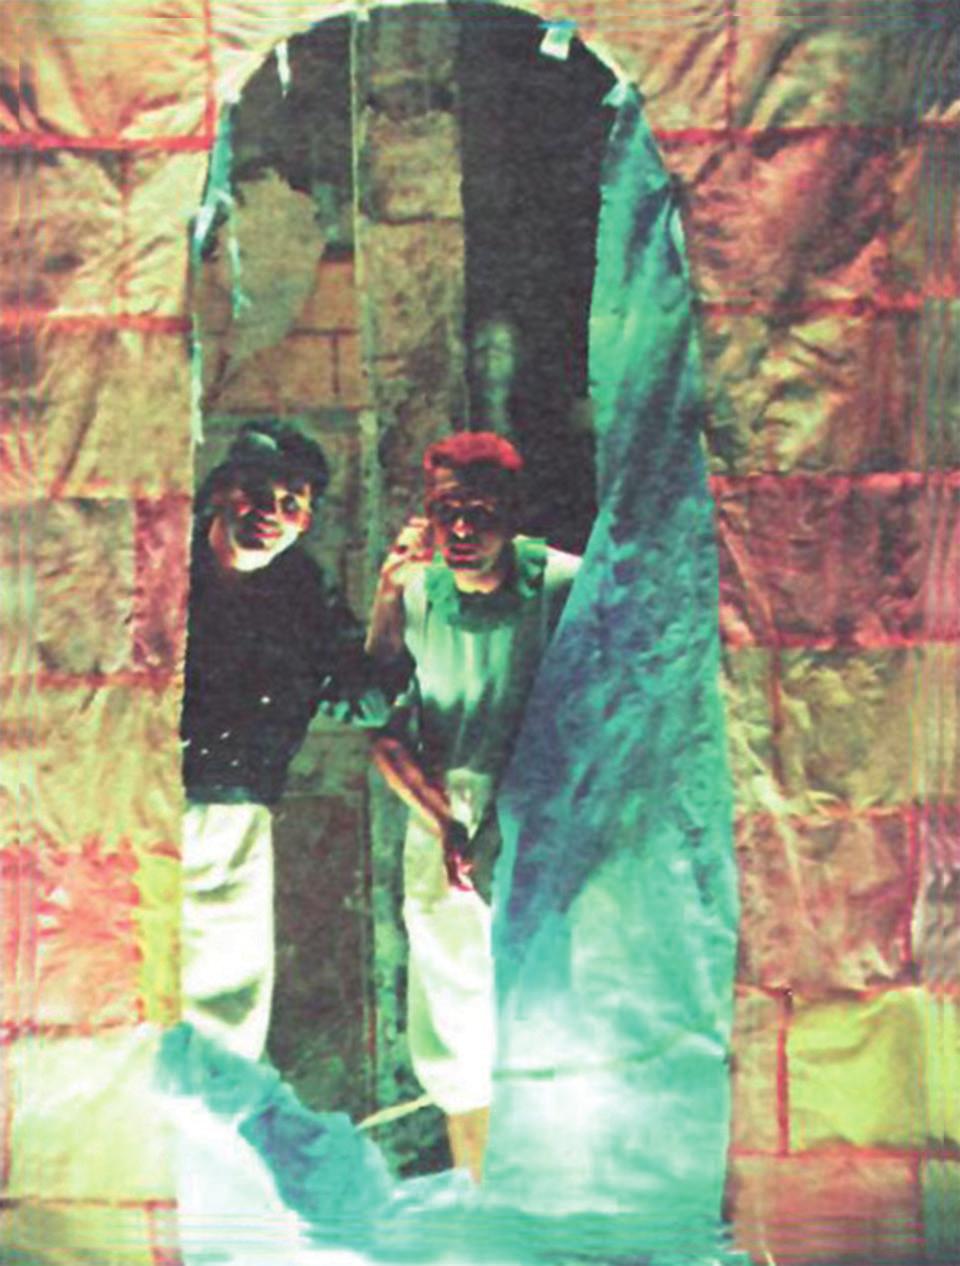 Κατζούρμπος, από τη «νέα ΣΚΗΝΗ» στο «Θέατρο της οδού Κυκλάδων» το 1993, σε σκηνοθεσία Λευτέρη Βογιατζή. Κορυφαίο ωστόσο έργο του Γ.